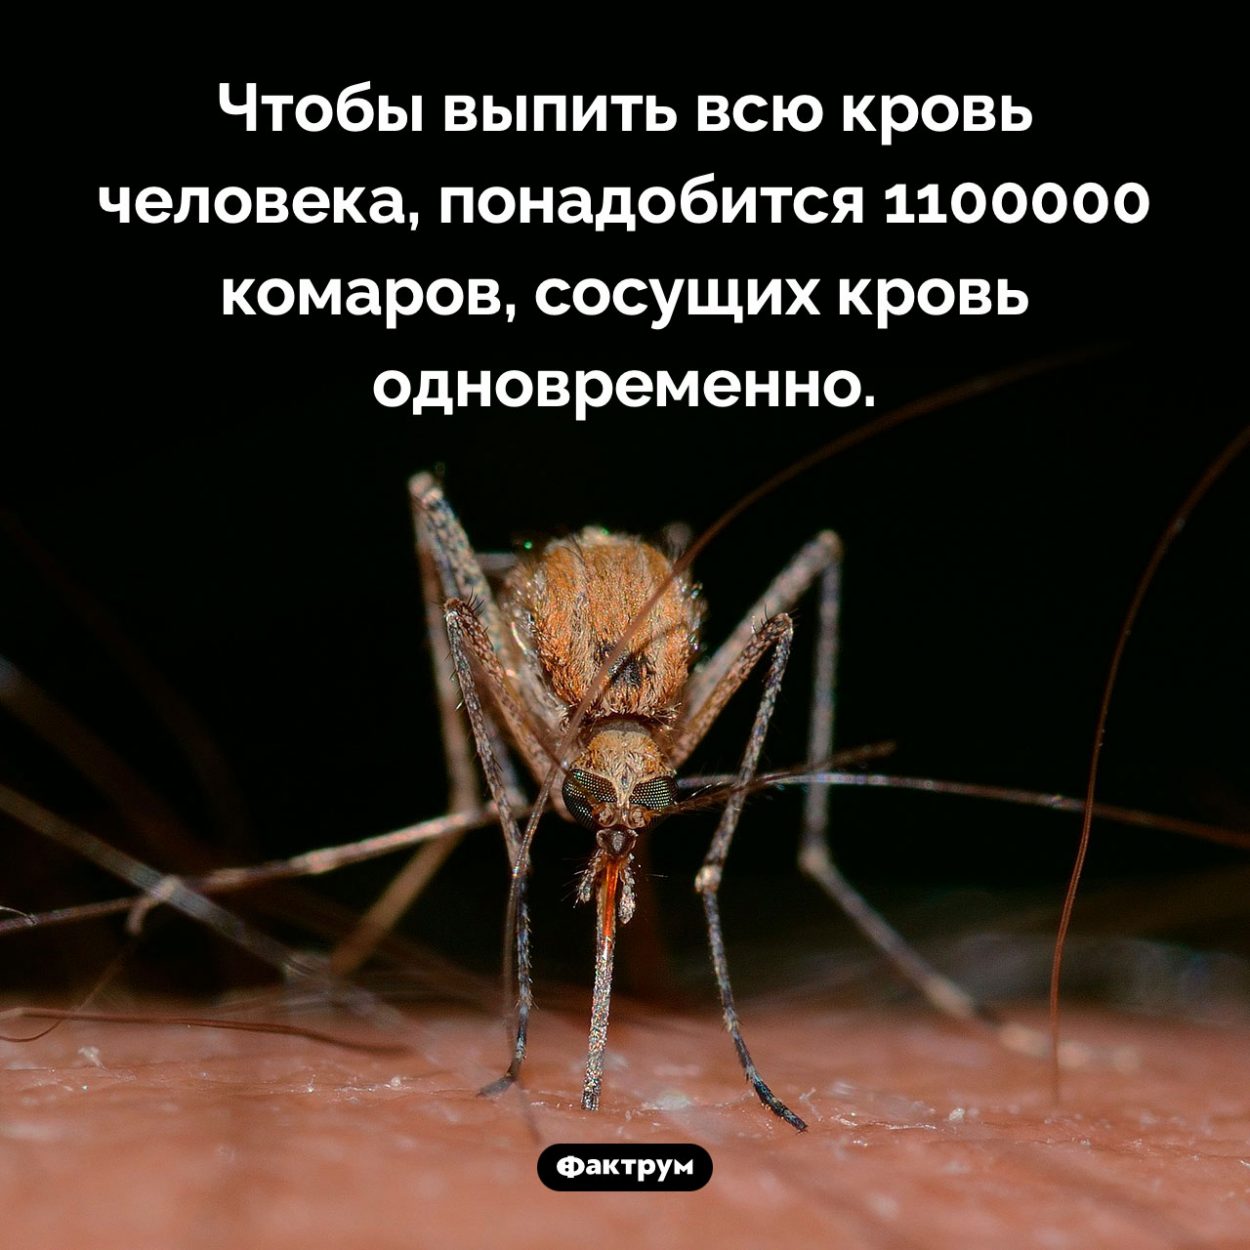 Сколько нужно комаров, чтобы выпить всю кровь человека. Чтобы выпить всю кровь человека, понадобится 1 100 000 комаров, сосущих кровь одновременно.